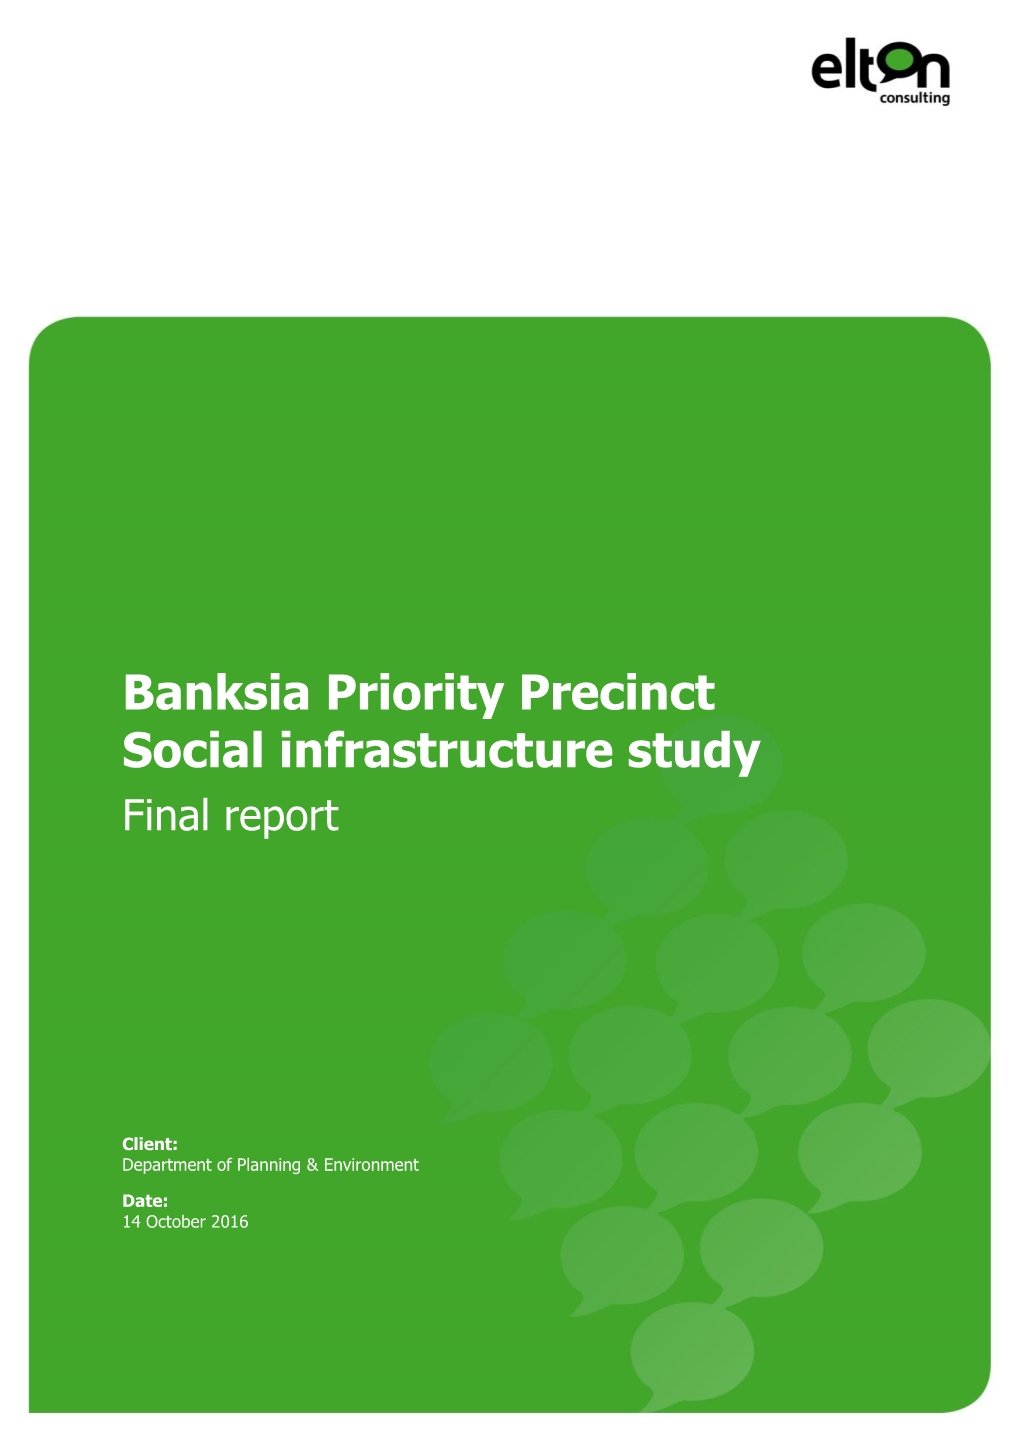 Banksia Priority Precinct Social Infrastructure Study Final Report